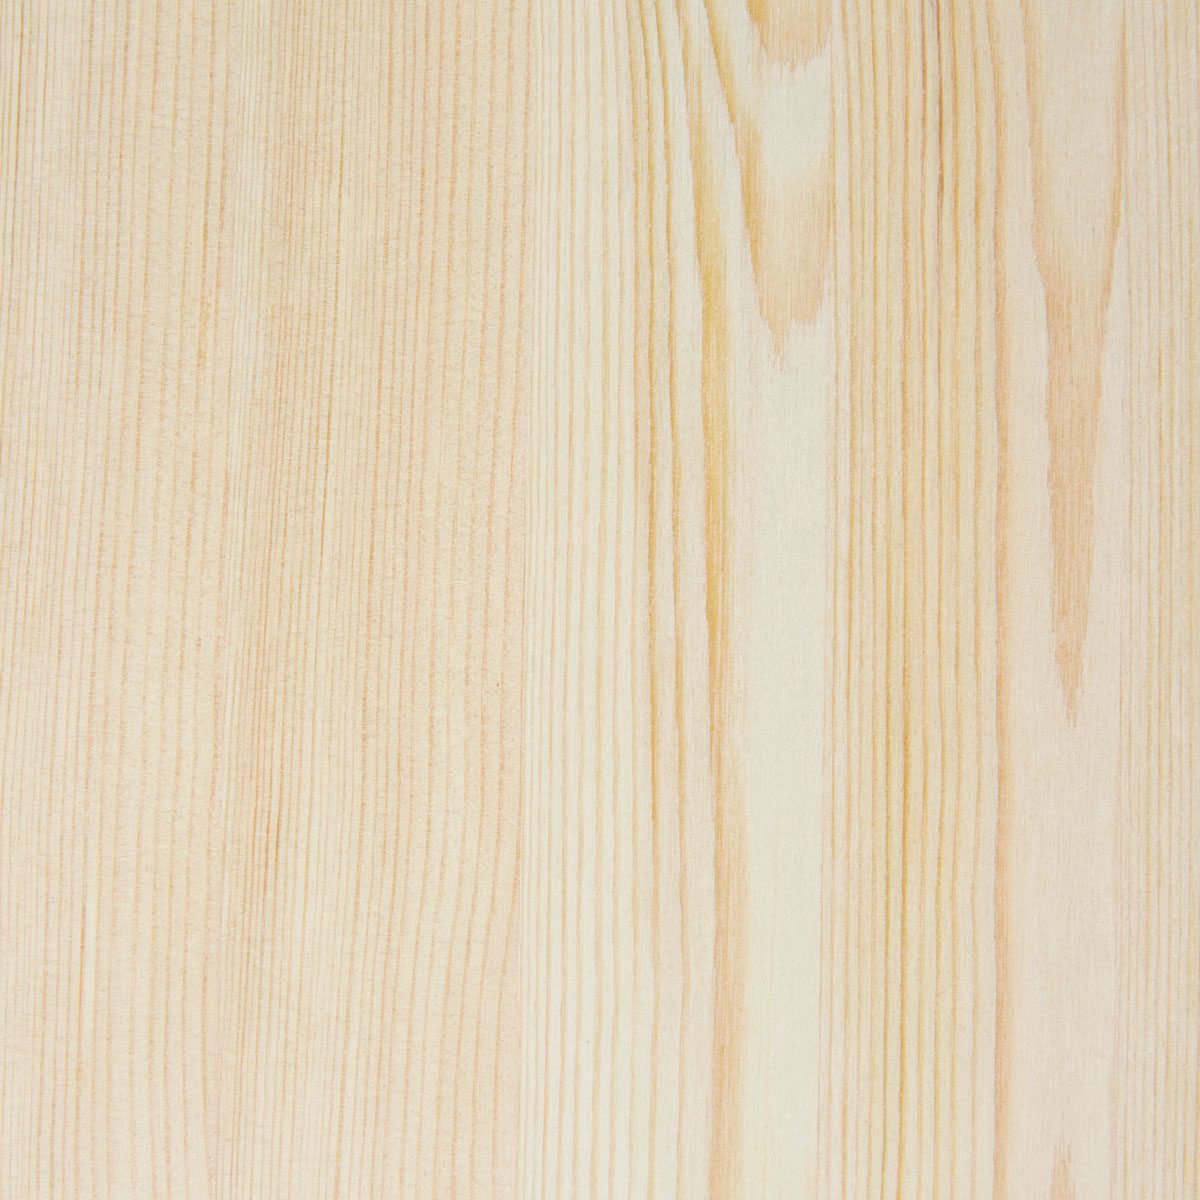 Wooden Board Panel, Wood Grain